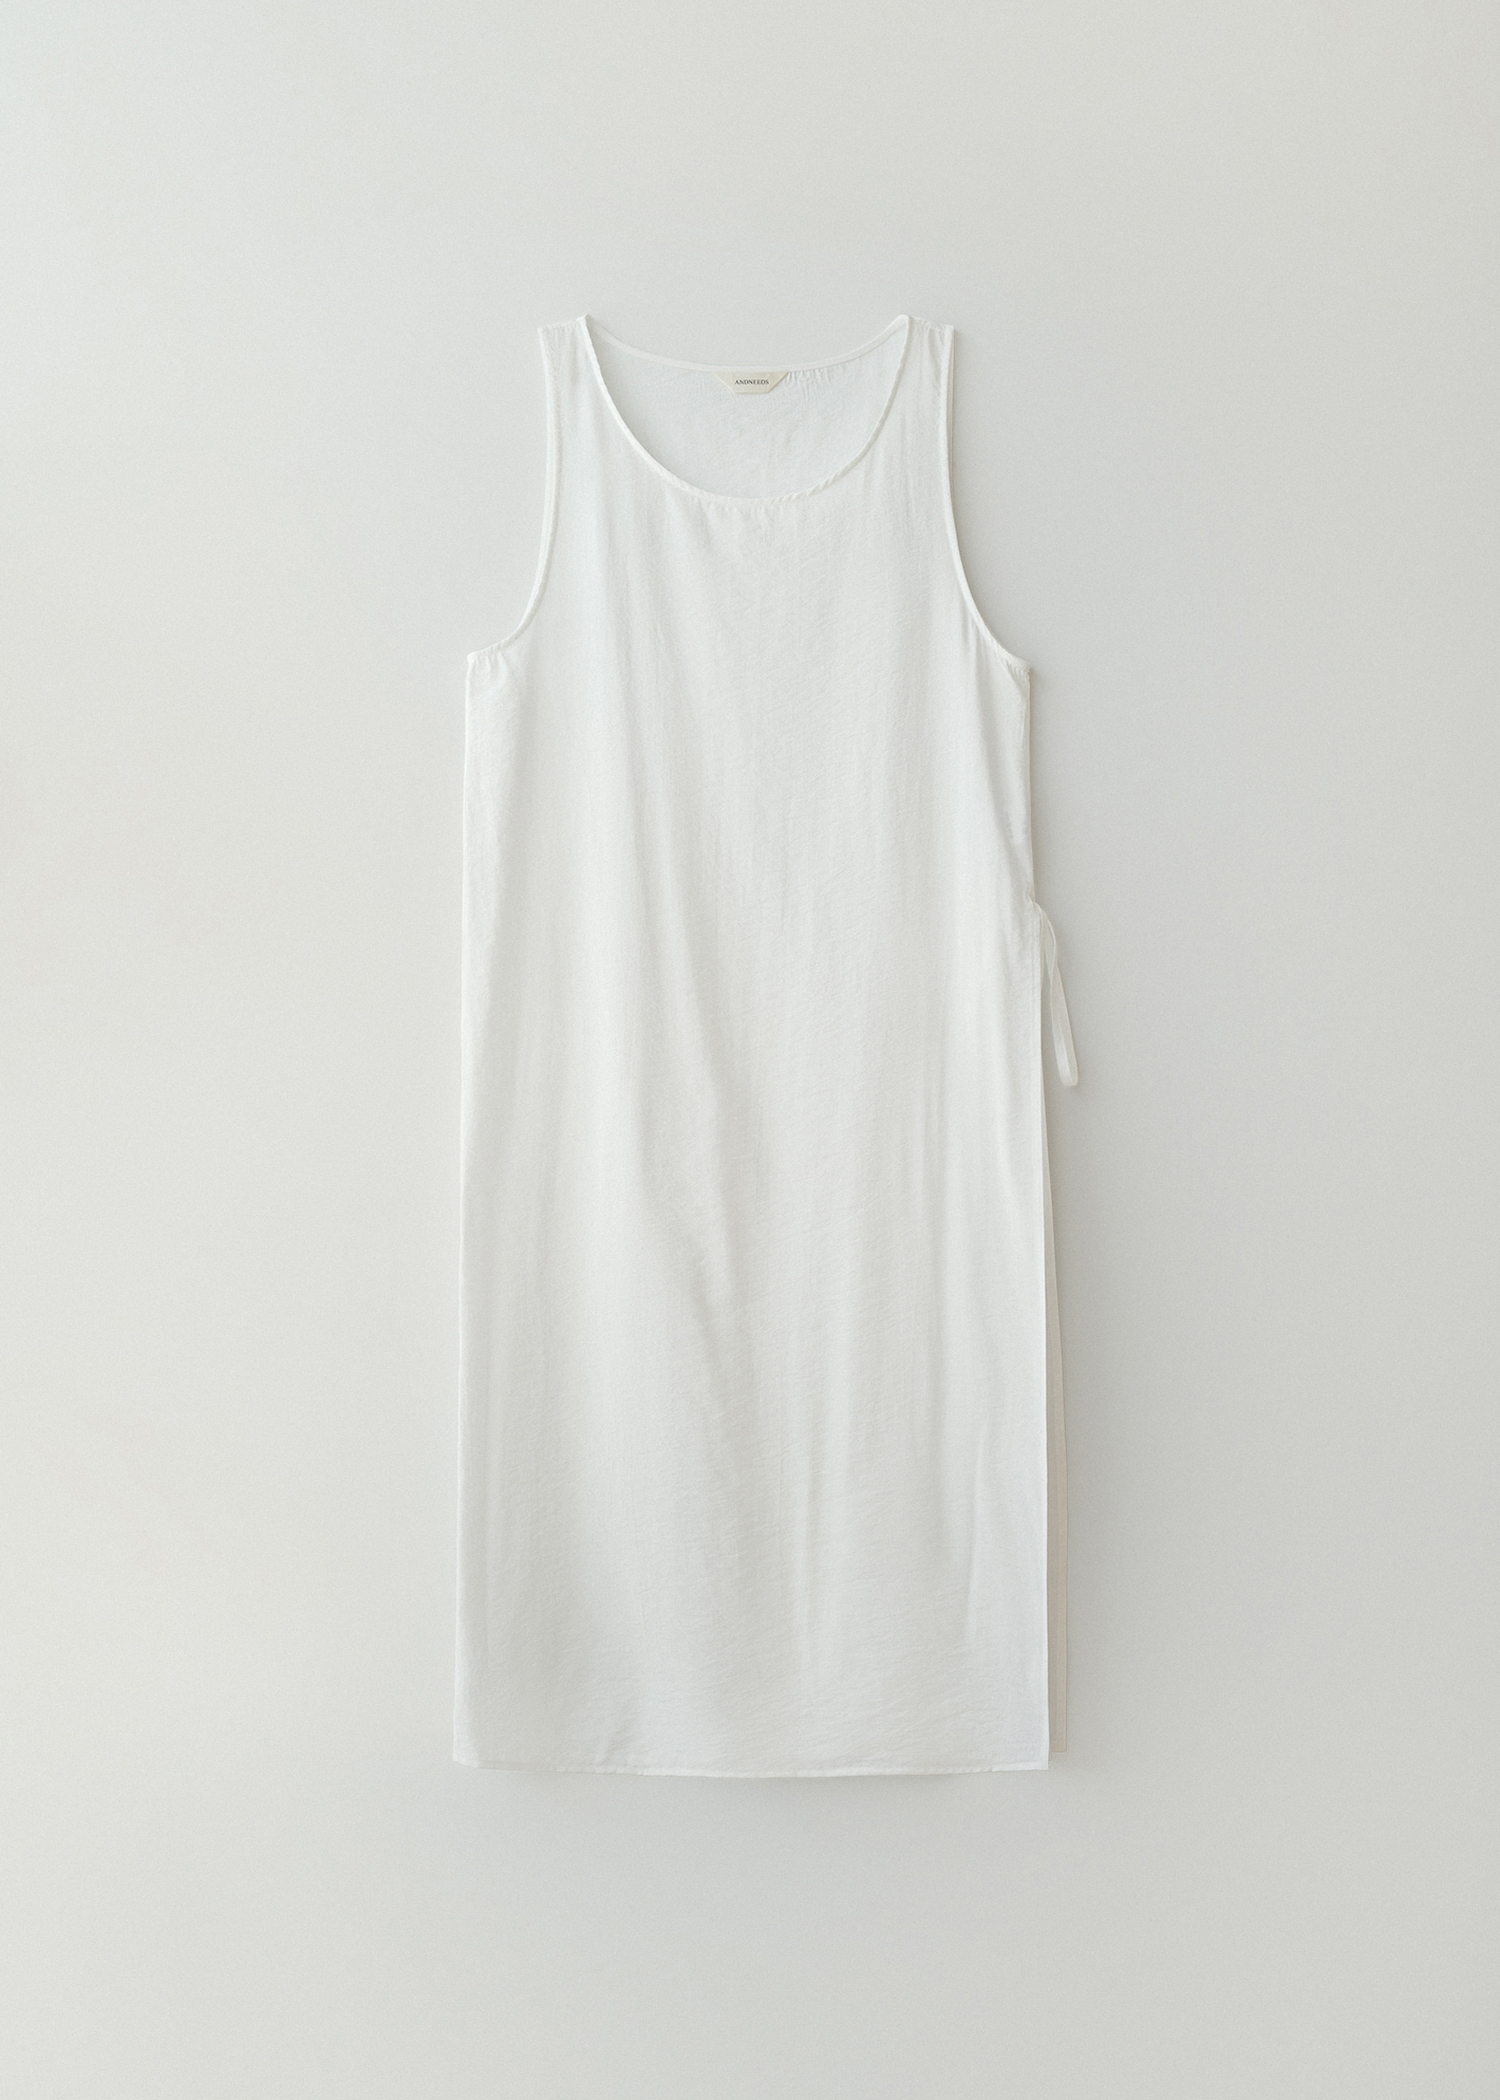 Sheer layered dress (white)